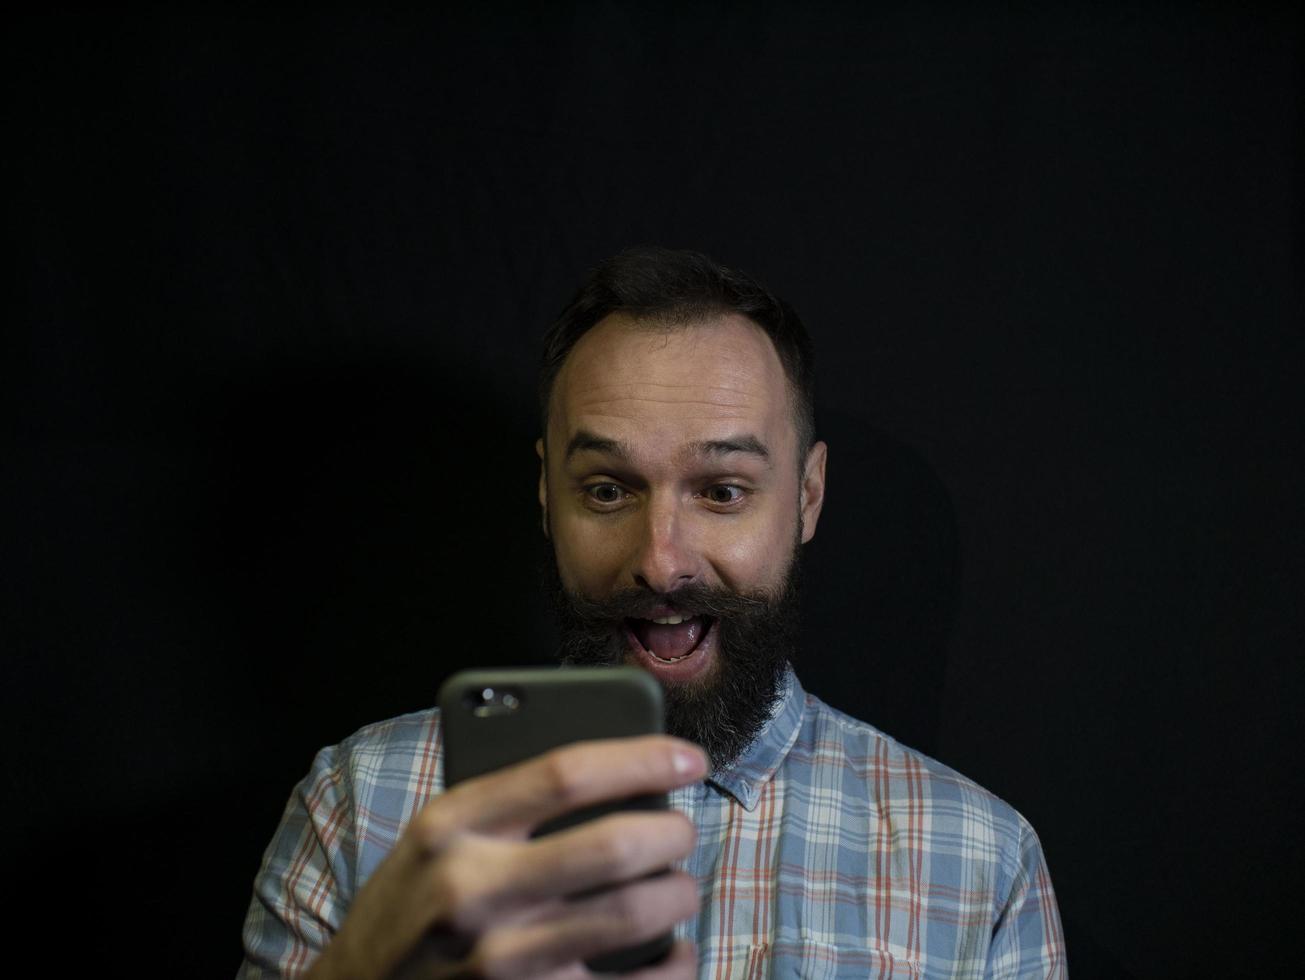 man med skägg tittar in i en mobiltelefon foto